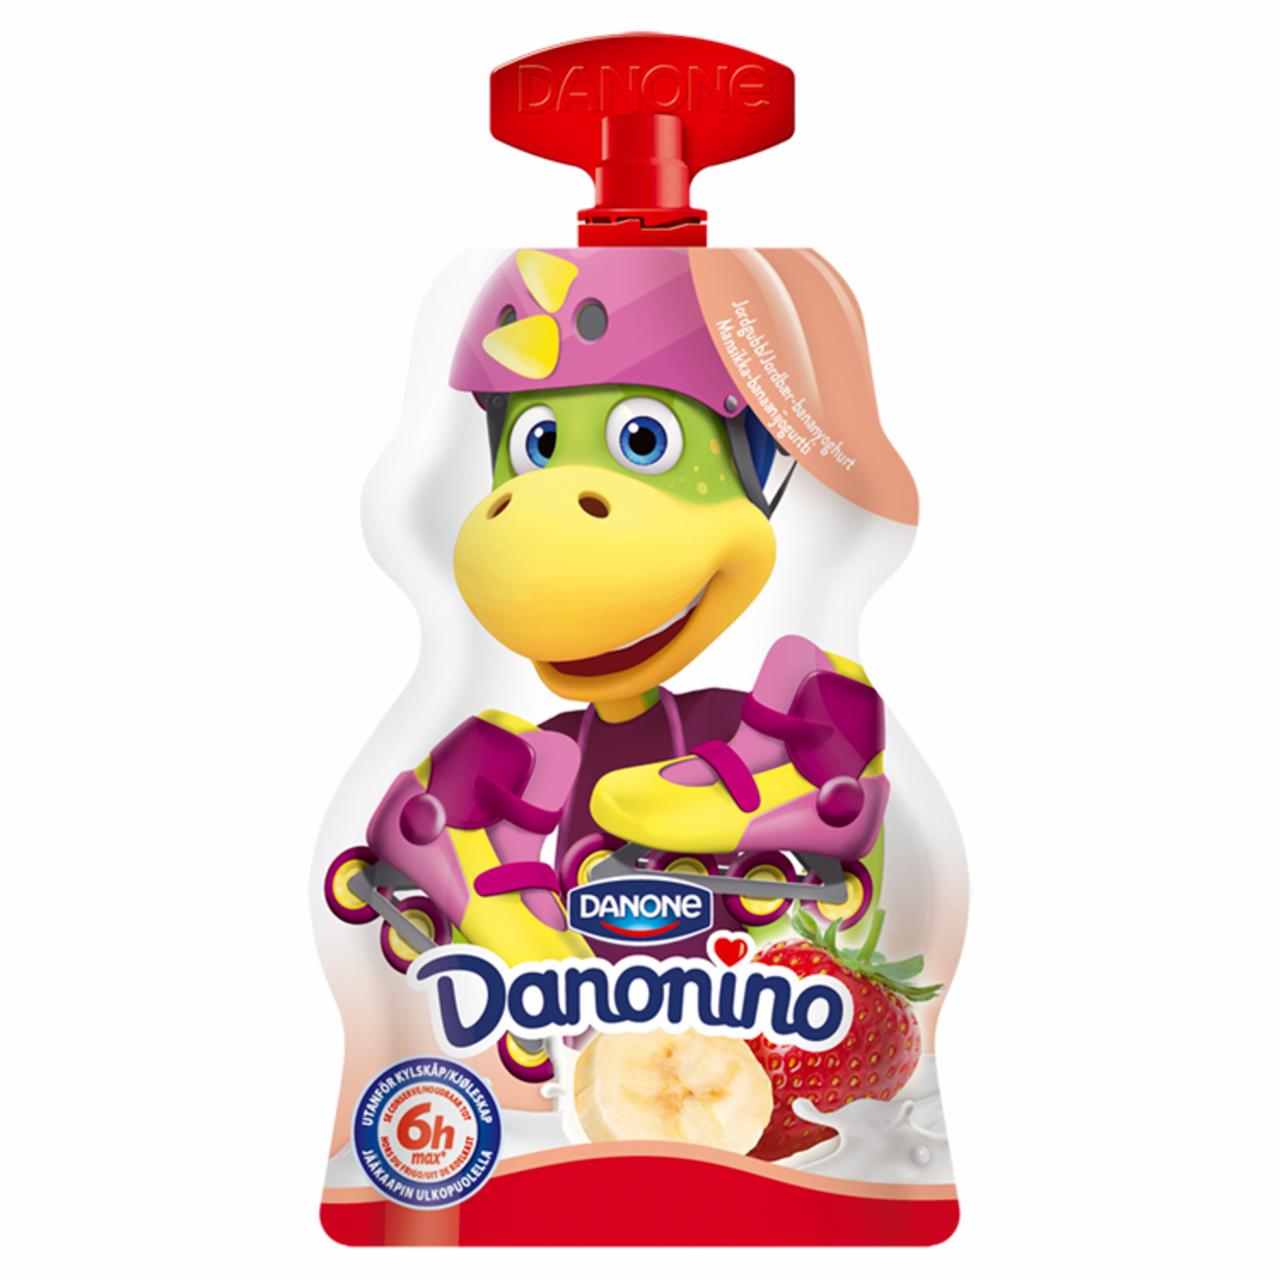 Képek - Danone Danonino élőflórás eper-banánízű joghurt hozzáadott kalciummal és D-vitaminnal 70 g